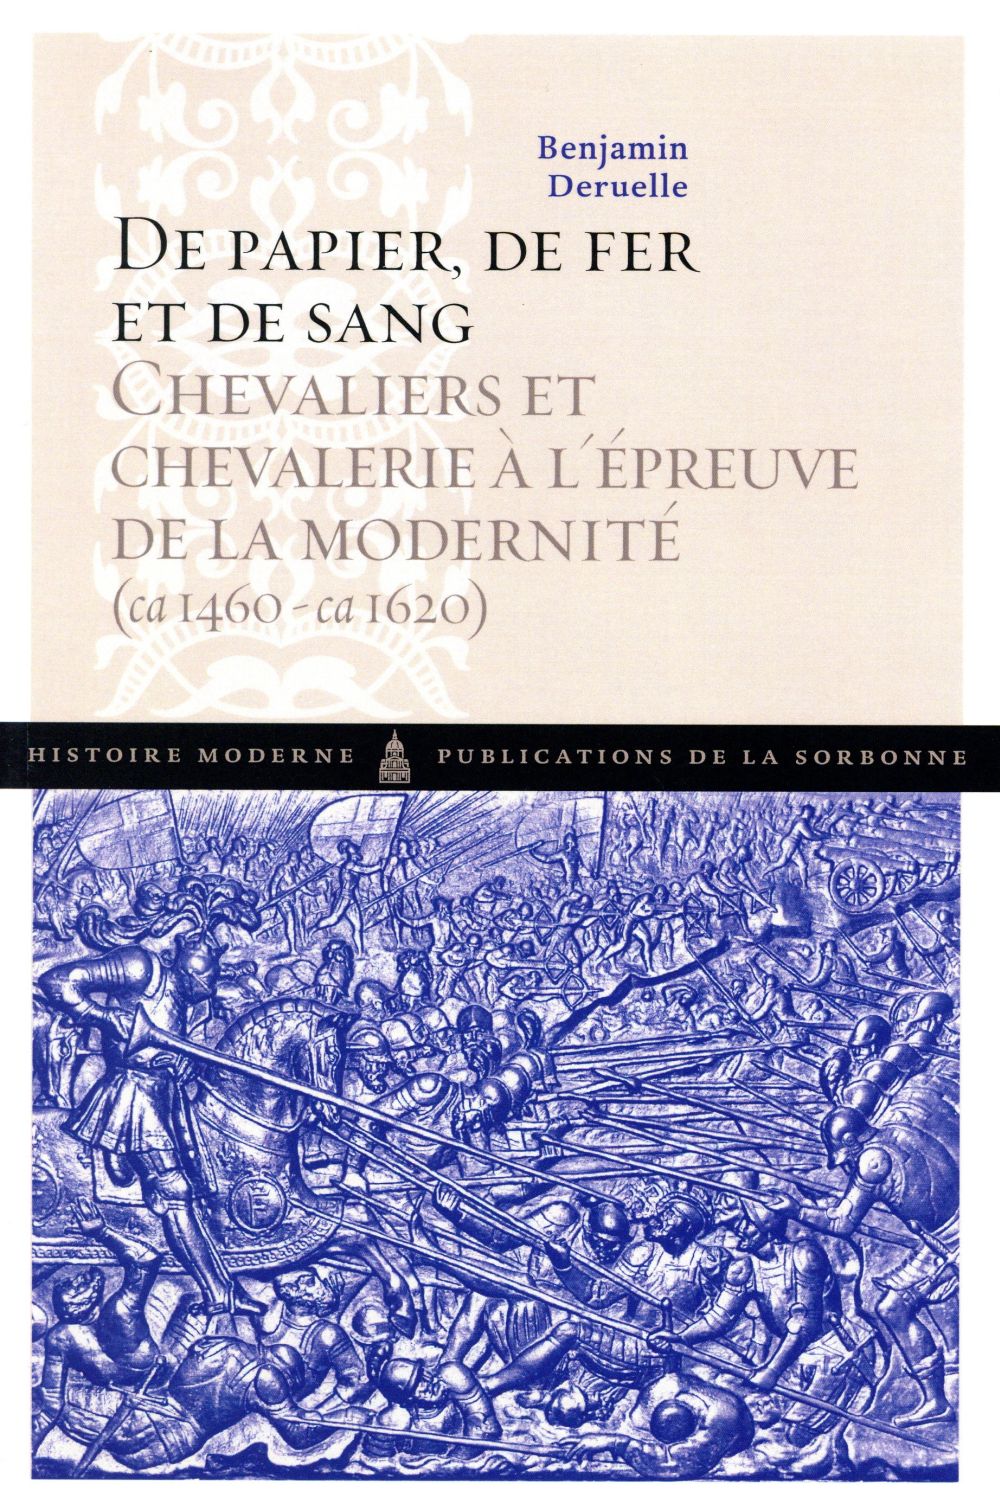 DE PAPIER, DE FER ET DE SANG - CHEVALIERS ET CHEVALERIE A L'EPREUVE DE LA MODERNITE (1460-1620)